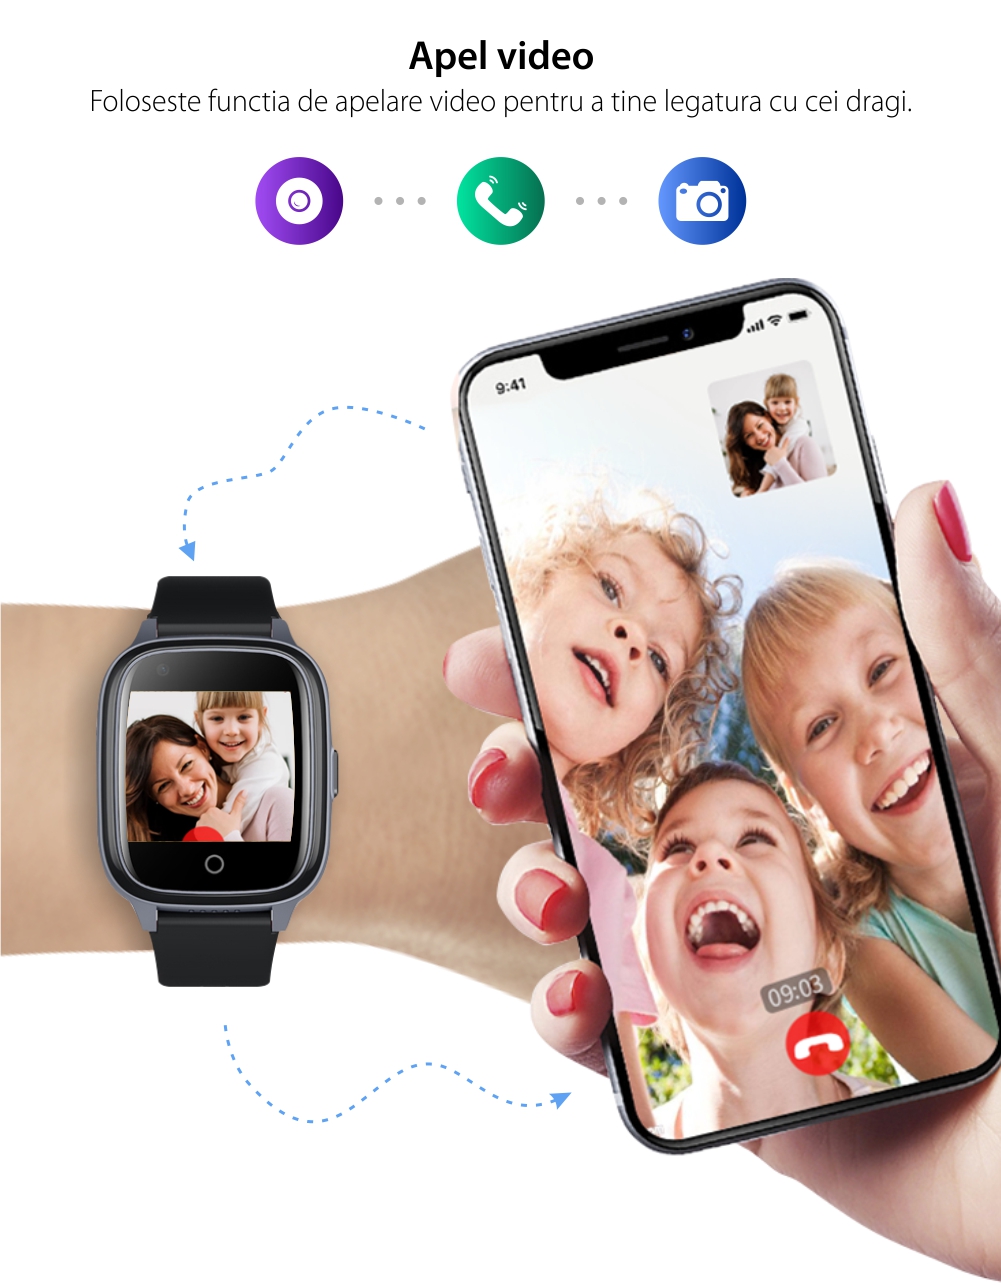 Ceas Smartwatch Pentru Copii Wonlex KT17, Negru cu Functie de Localizare GPS, Comunicare bidirectionala, Pedometru, Alarma, Camera, Mesagerie, Apel Video, Buton SOS